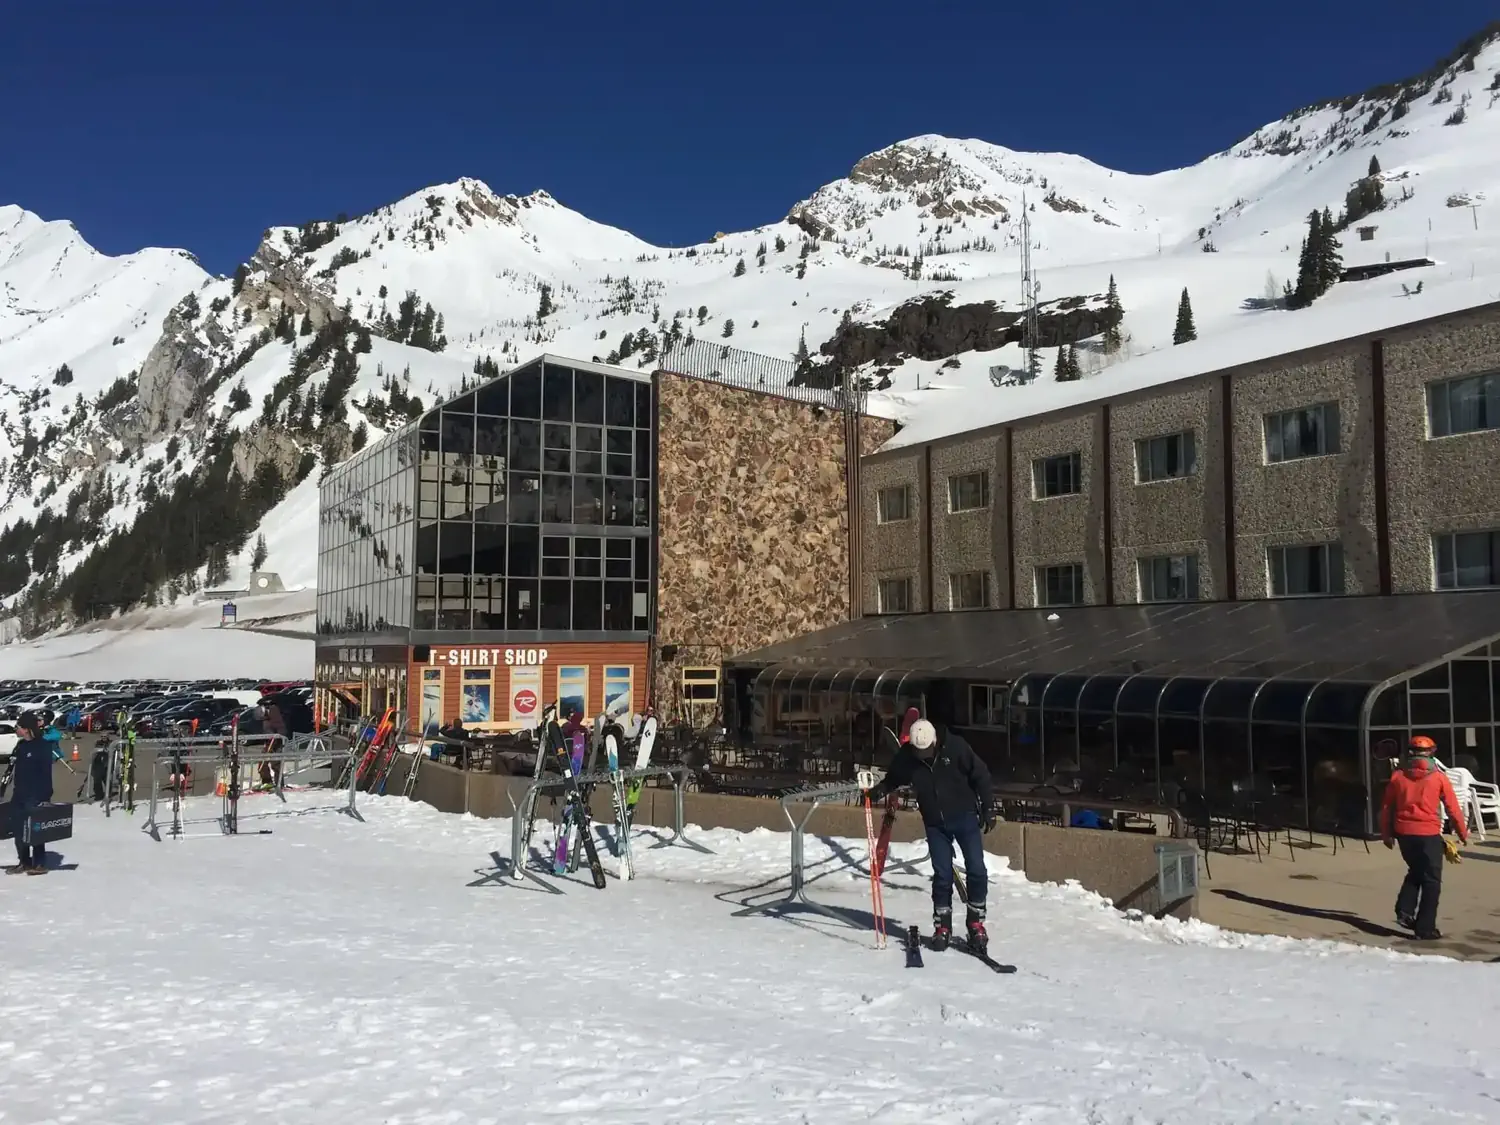 View of the Goldminer's Daughter lodge at Alta Ski Resort